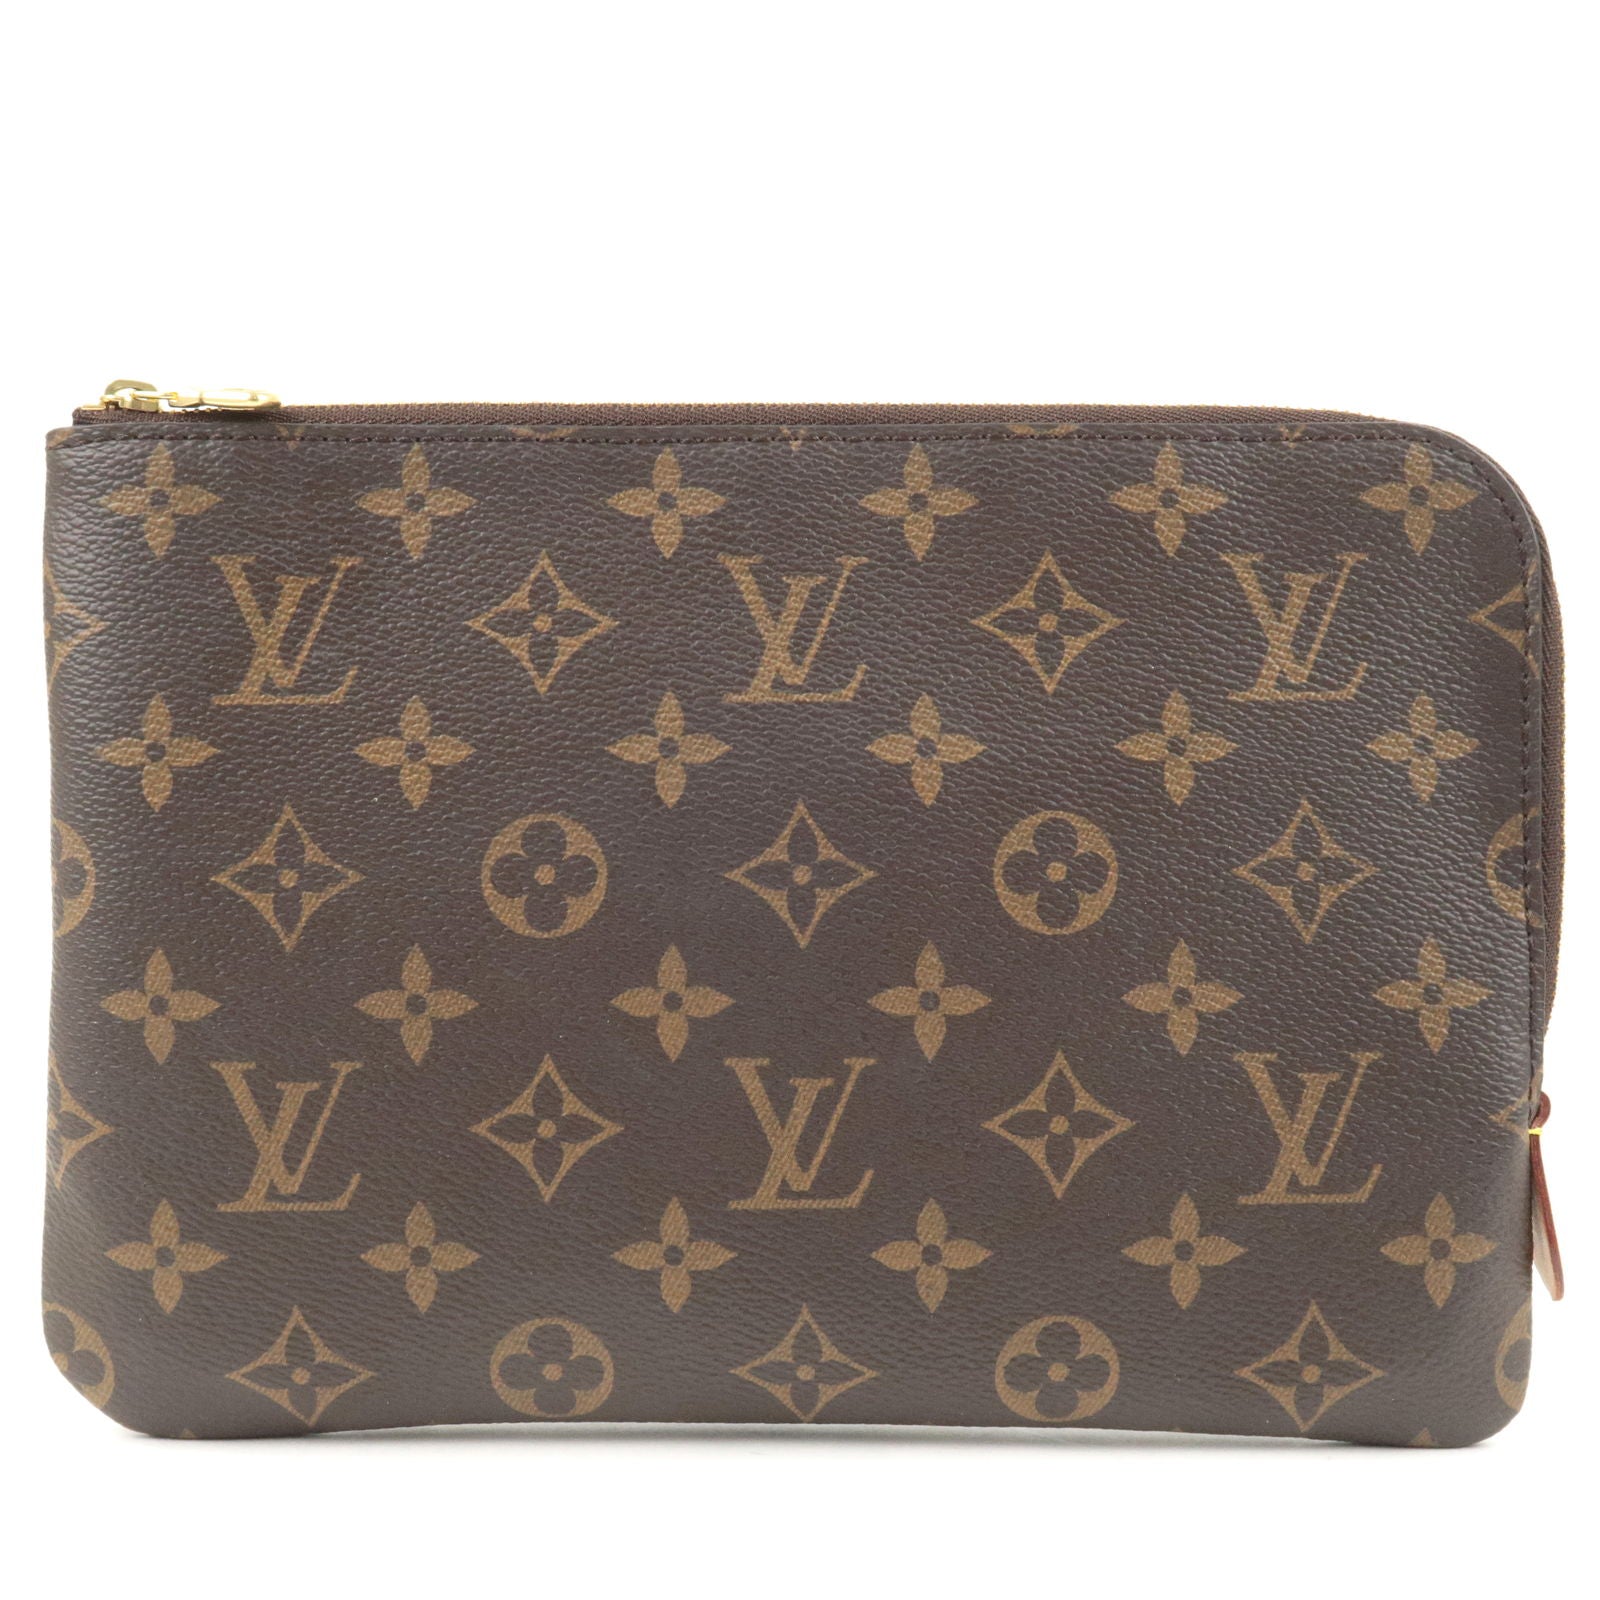 Louis-Vuitton-Etui-Voyage-PM-Clutch-Bag-Document-Bag-M44500